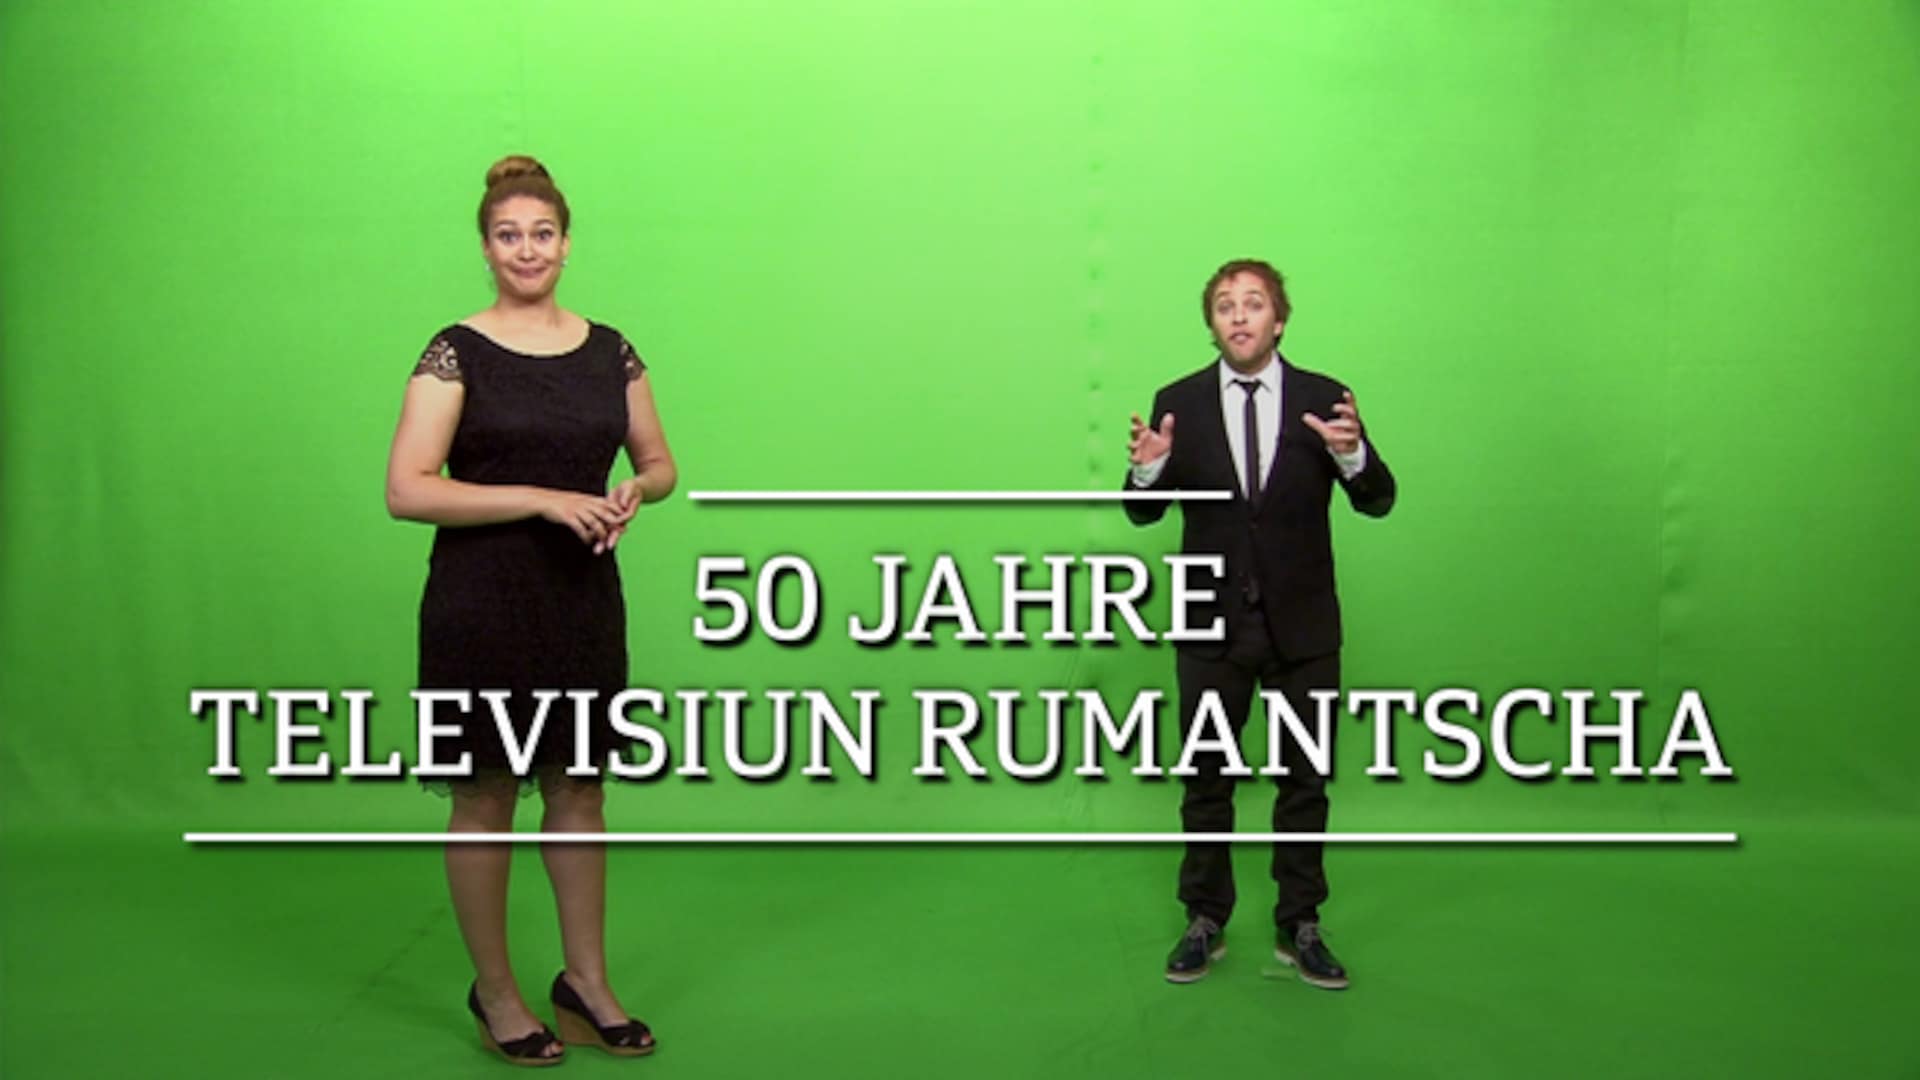 50 Jahre Televisiun Rumantscha